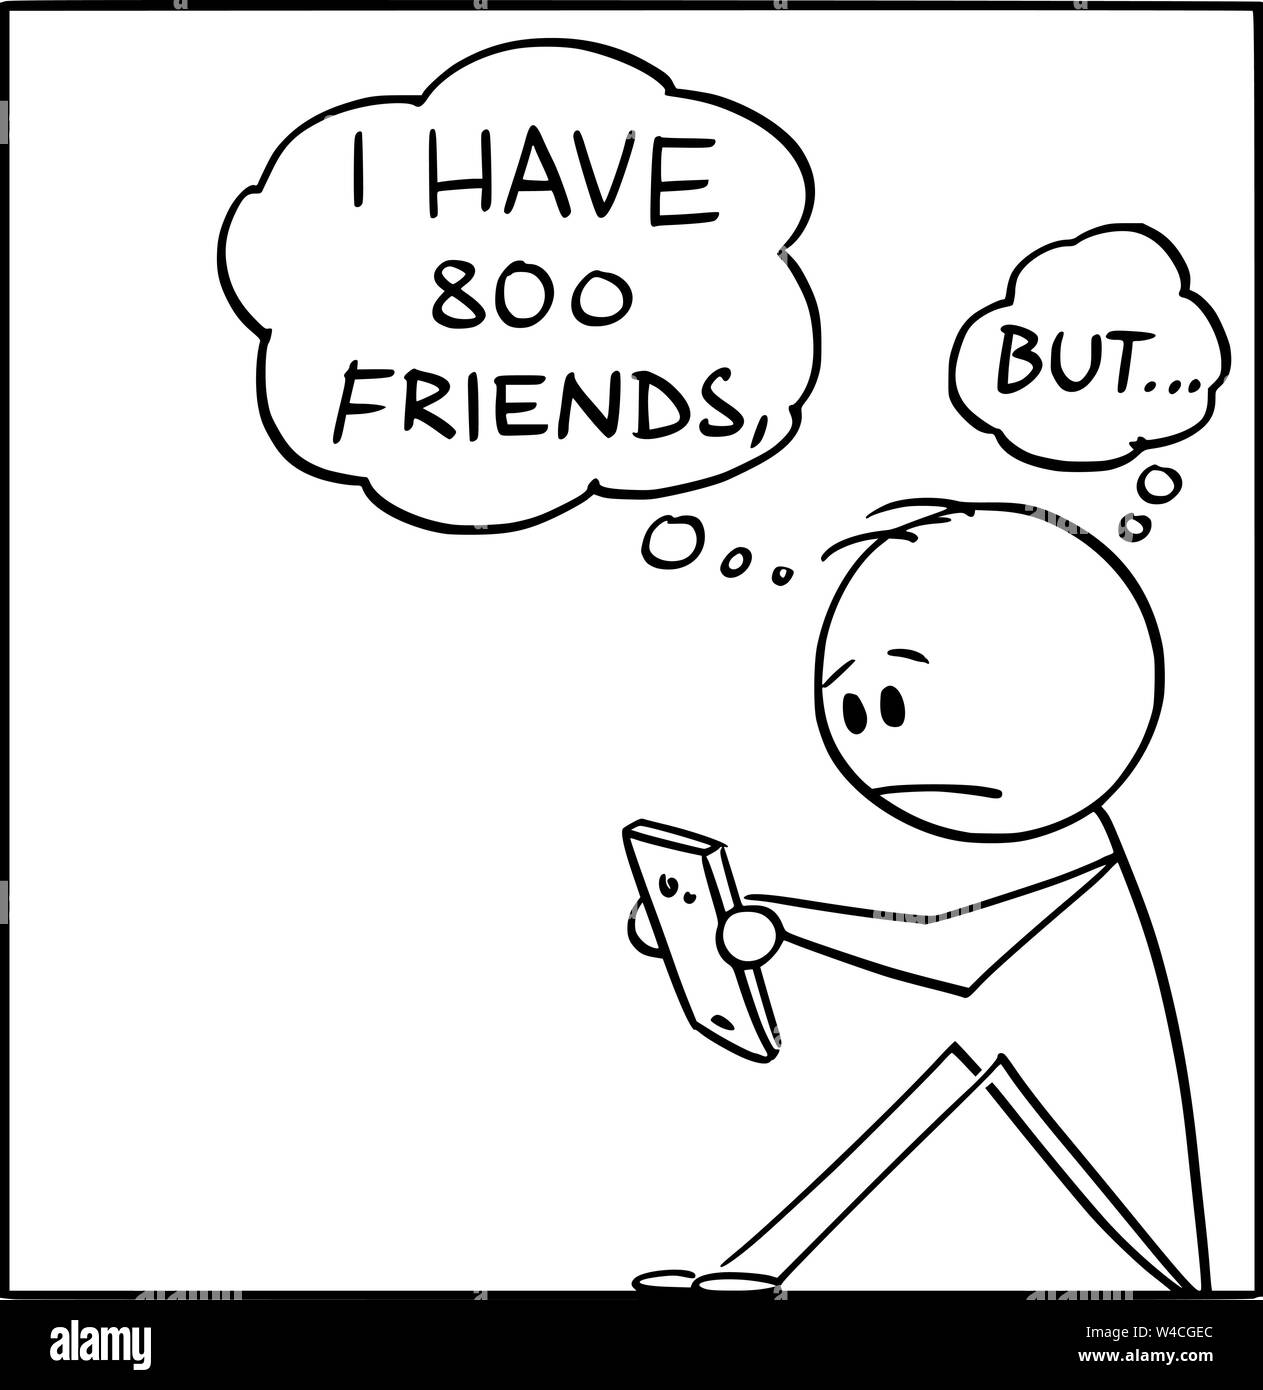 Vector cartoon stick figura disegno illustrazione concettuale di Lonely Man con molti amici virtuali su reti sociali online, ma solo senza amici veri. Illustrazione Vettoriale